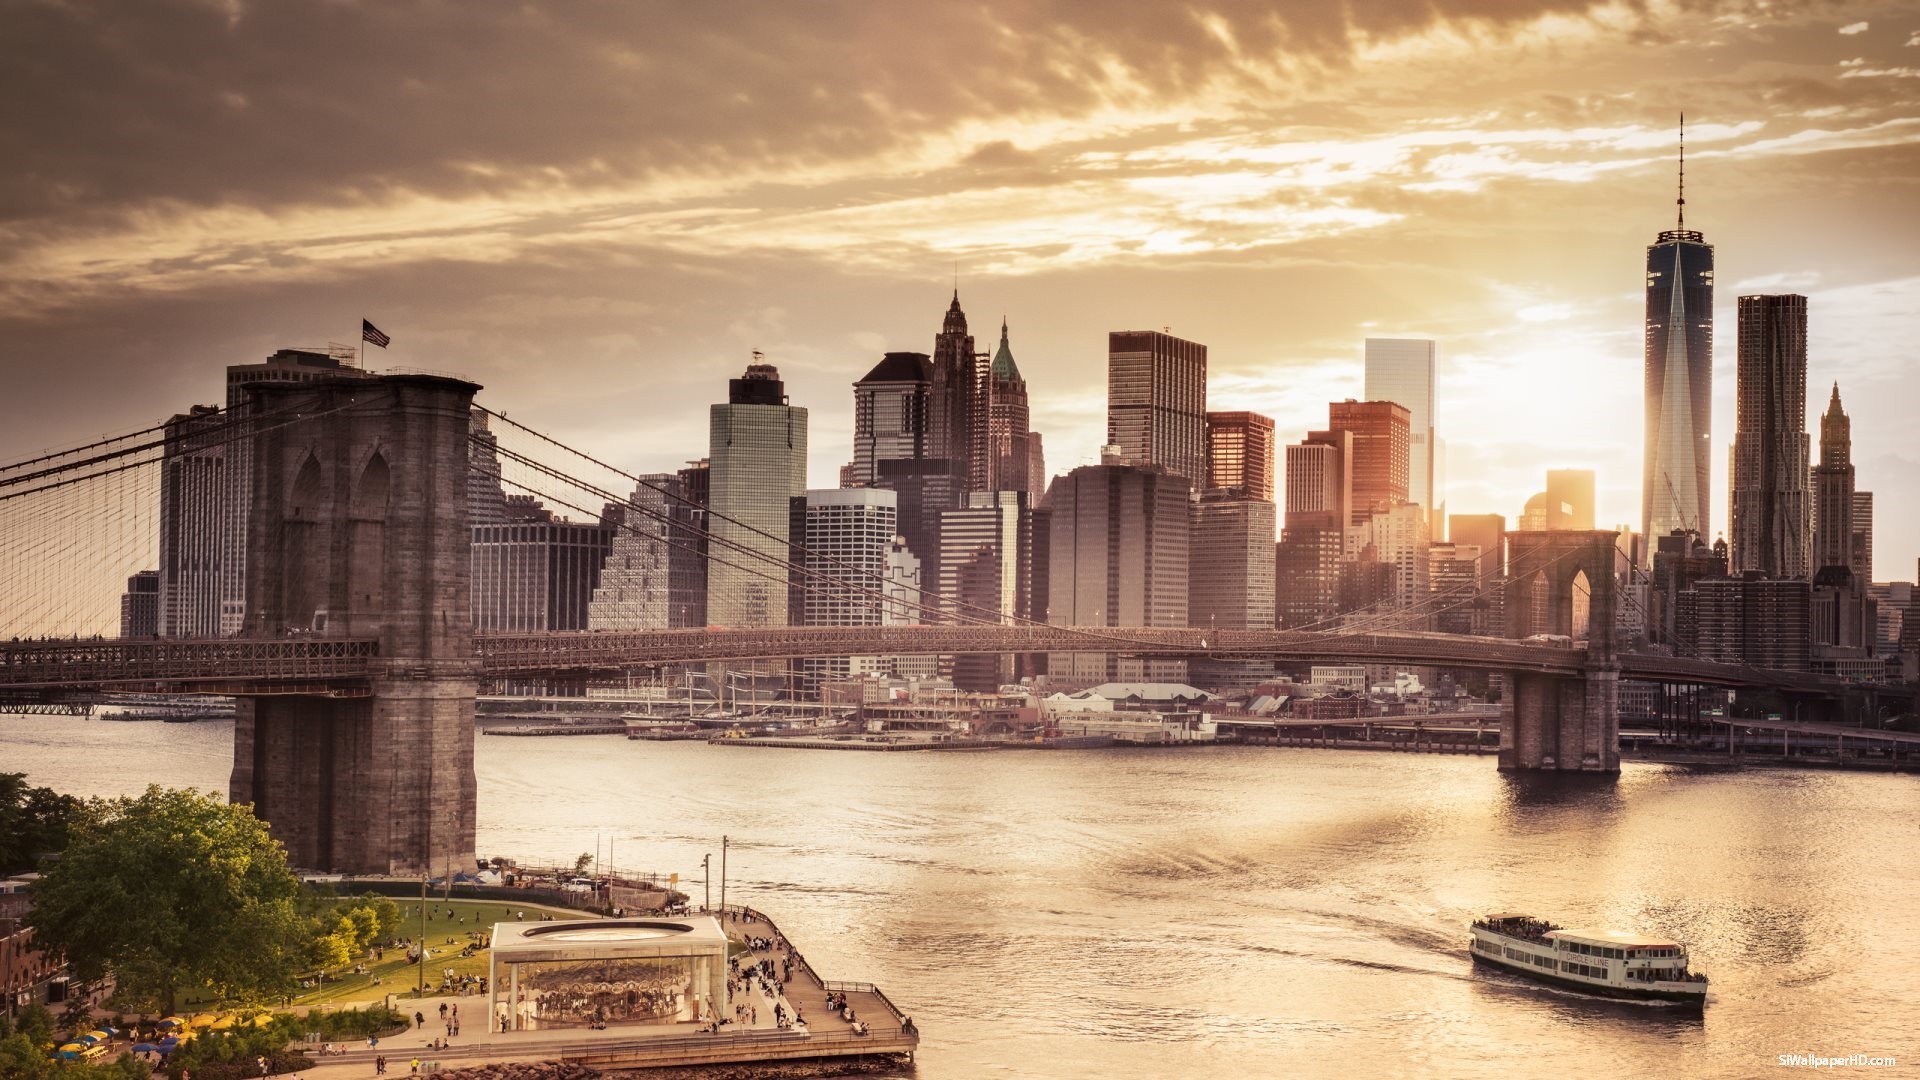 Với những người yêu thích phong cảnh đô thị, hình nền New York Skyline sẽ là một sự lựa chọn tuyệt vời để thăng hoa sự sang trọng và hiện đại trong phong cách của bạn.